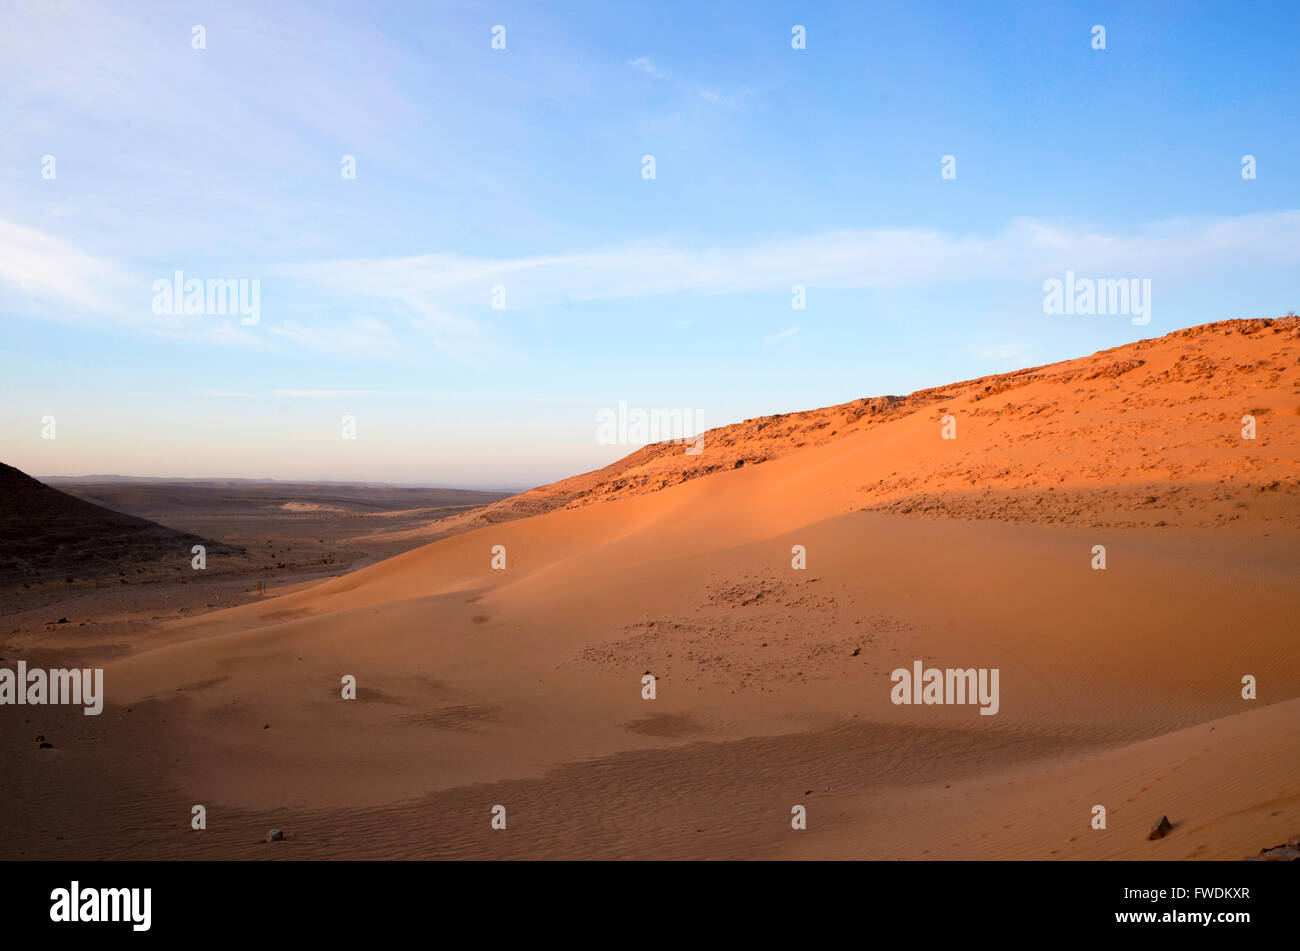 Dunes de sable du désert. Photographié dans la région de l'Aravah, désert du Néguev, Israël Banque D'Images